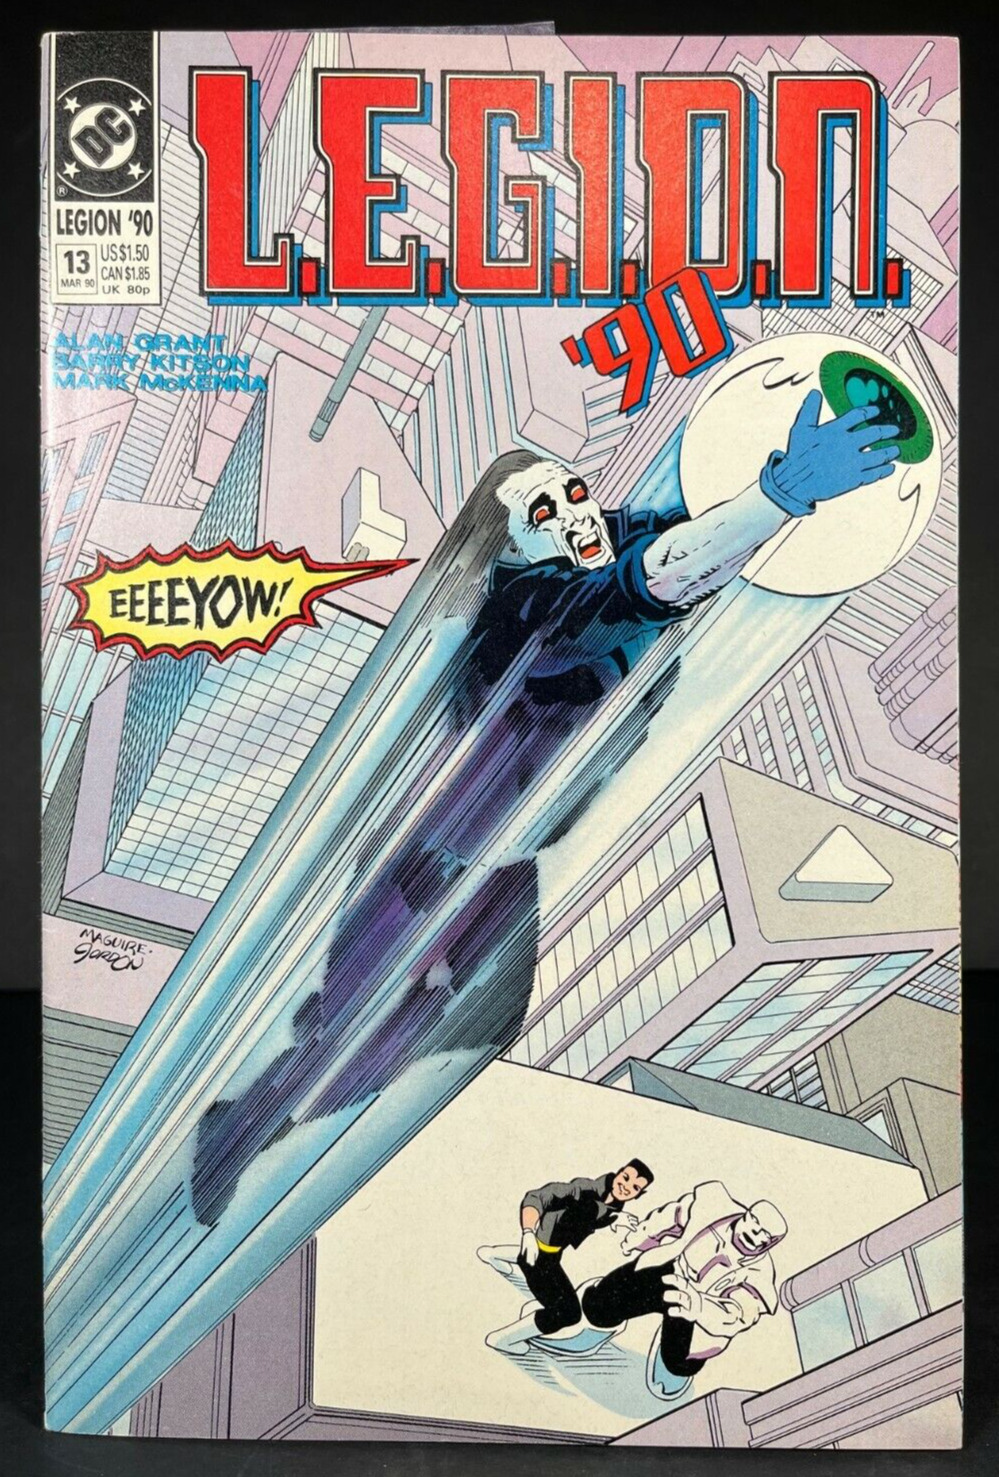 L.E.G.I.O.N. '90 No.13 March 1990 DC Comics